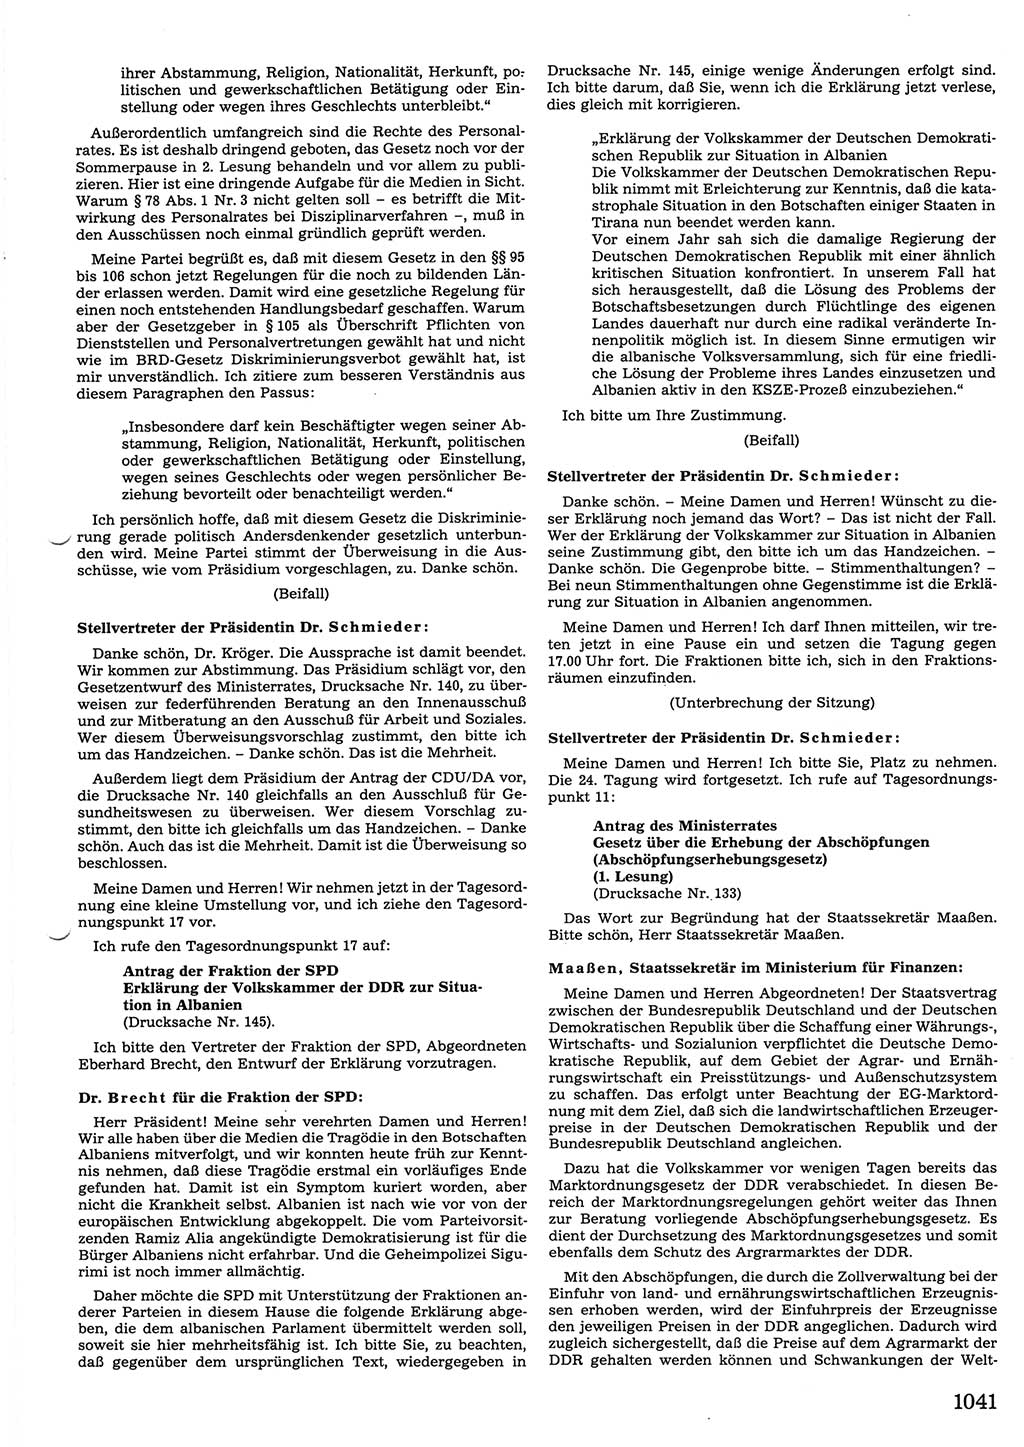 Tagungen der Volkskammer (VK) der Deutschen Demokratischen Republik (DDR), 10. Wahlperiode 1990, Seite 1041 (VK. DDR 10. WP. 1990, Prot. Tg. 1-38, 5.4.-2.10.1990, S. 1041)